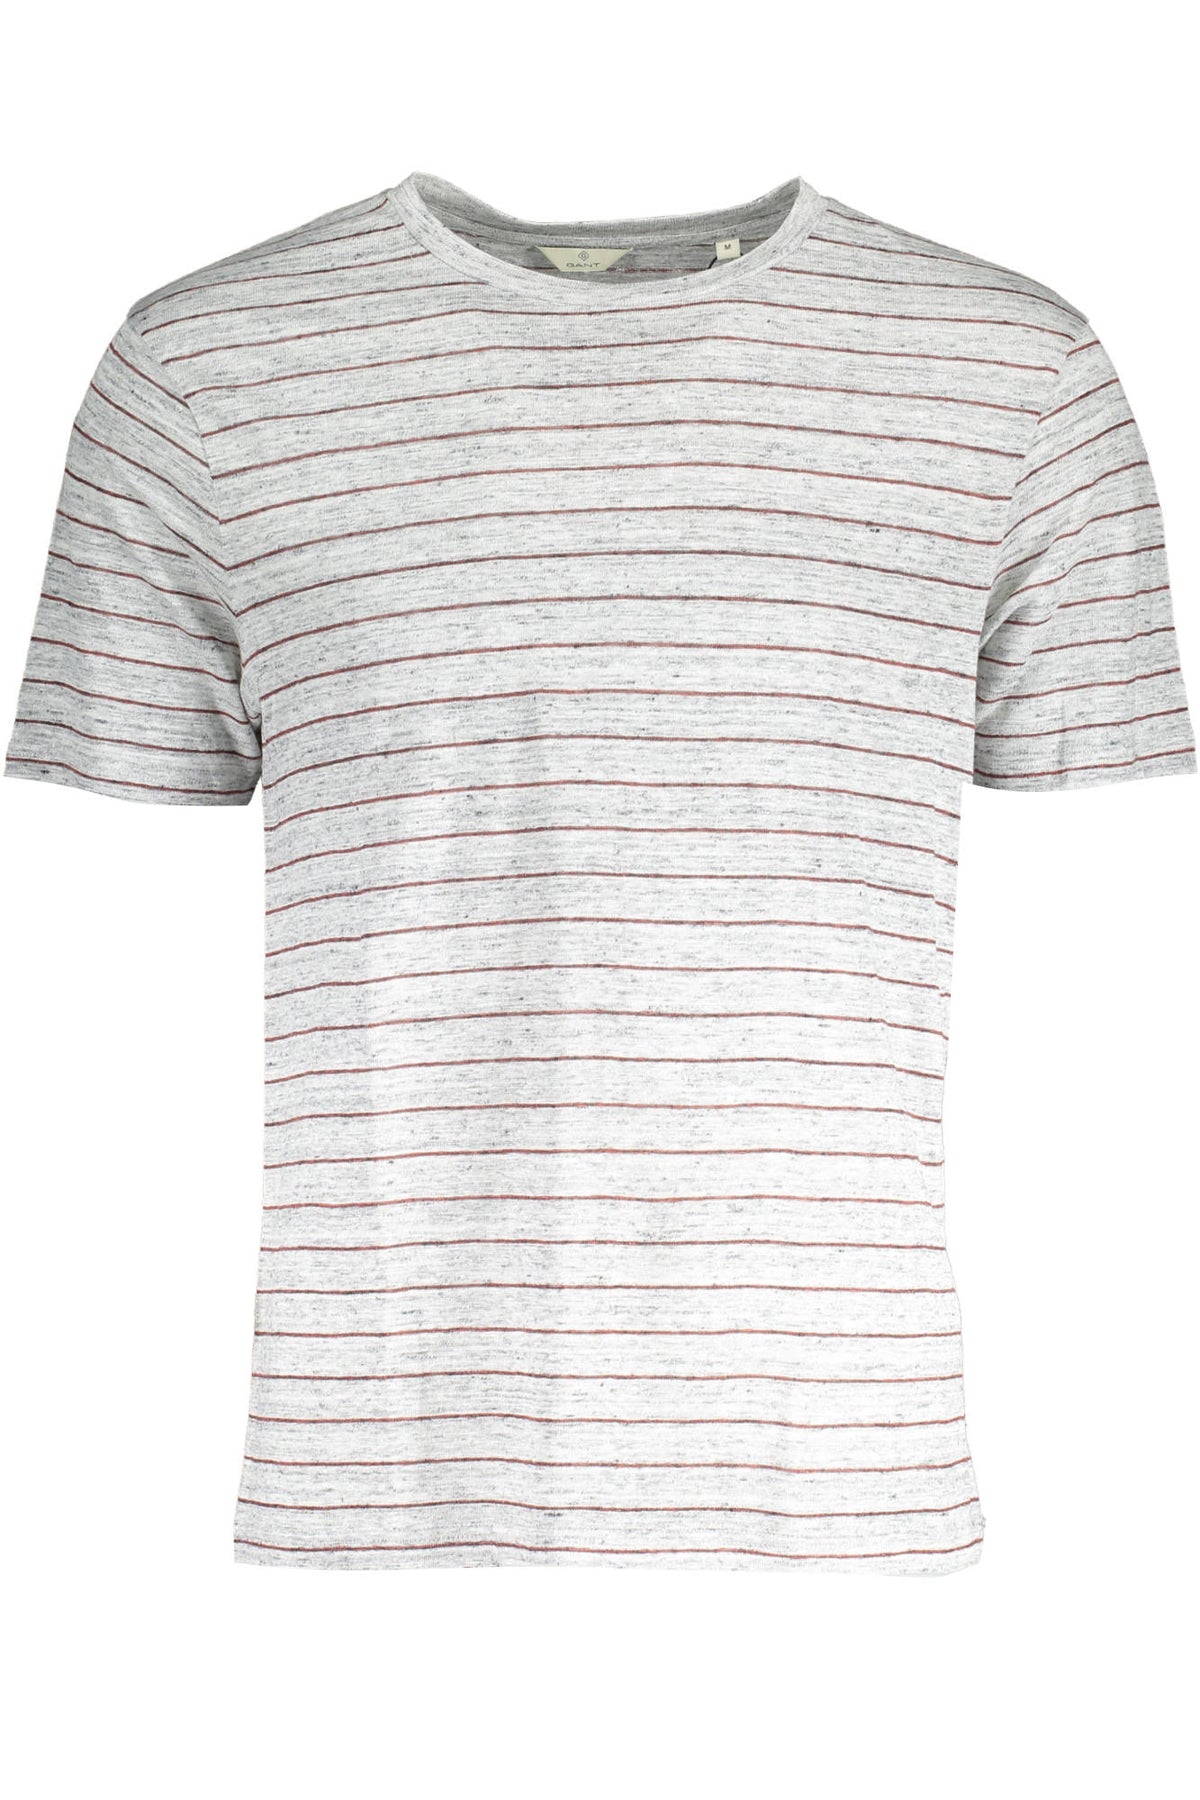 Gant Herren T-Shirt Sweatshirt mit Rundhalsausschnitt, kurzarm